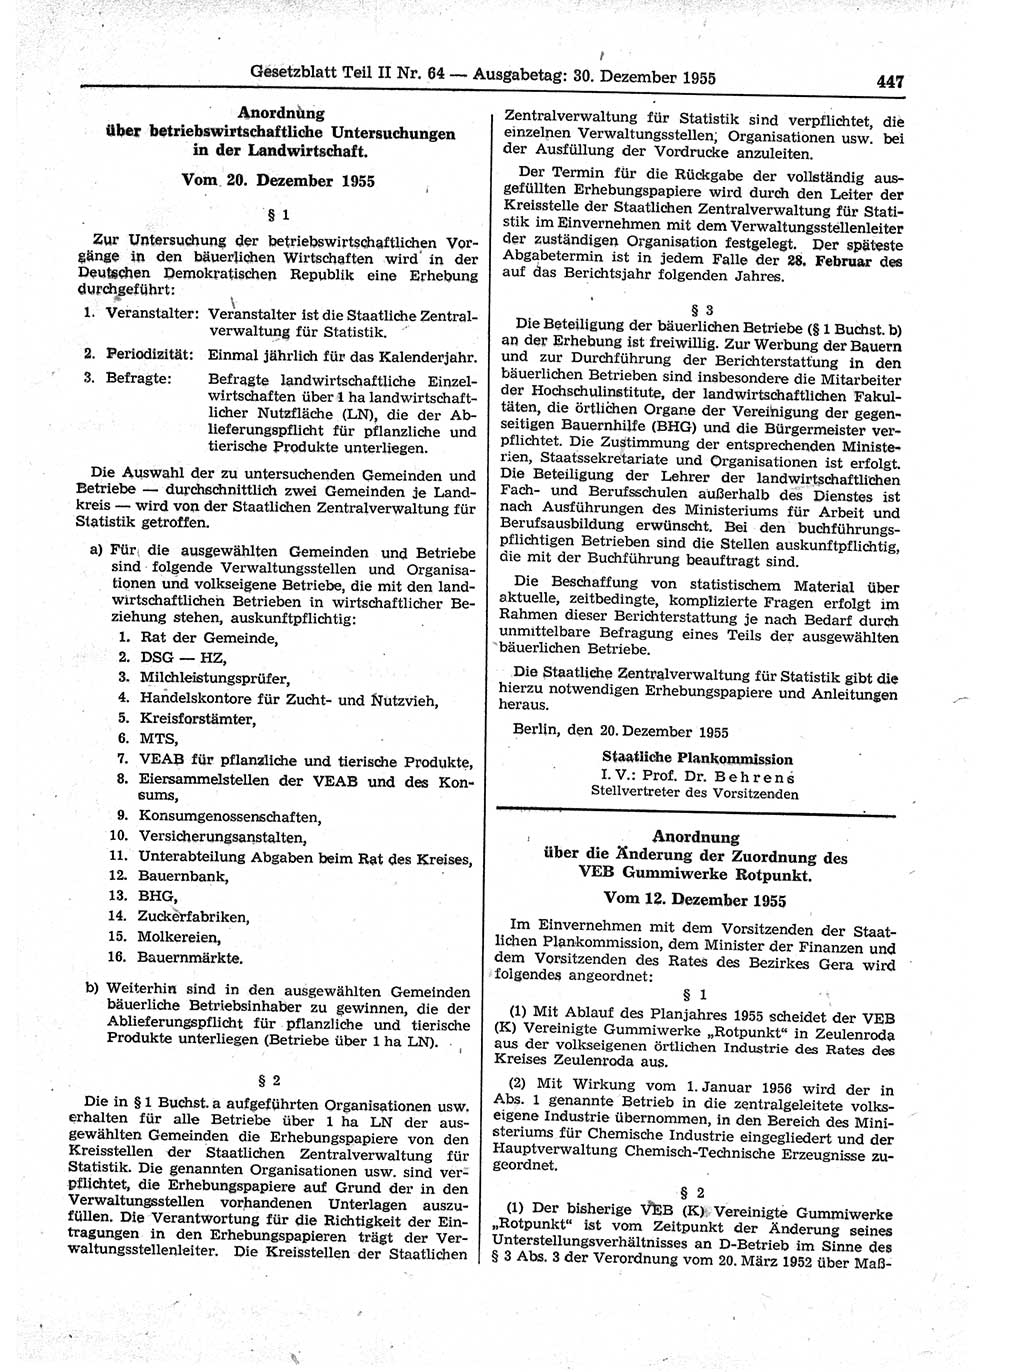 Gesetzblatt (GBl.) der Deutschen Demokratischen Republik (DDR) Teil ⅠⅠ 1955, Seite 447 (GBl. DDR ⅠⅠ 1955, S. 447)